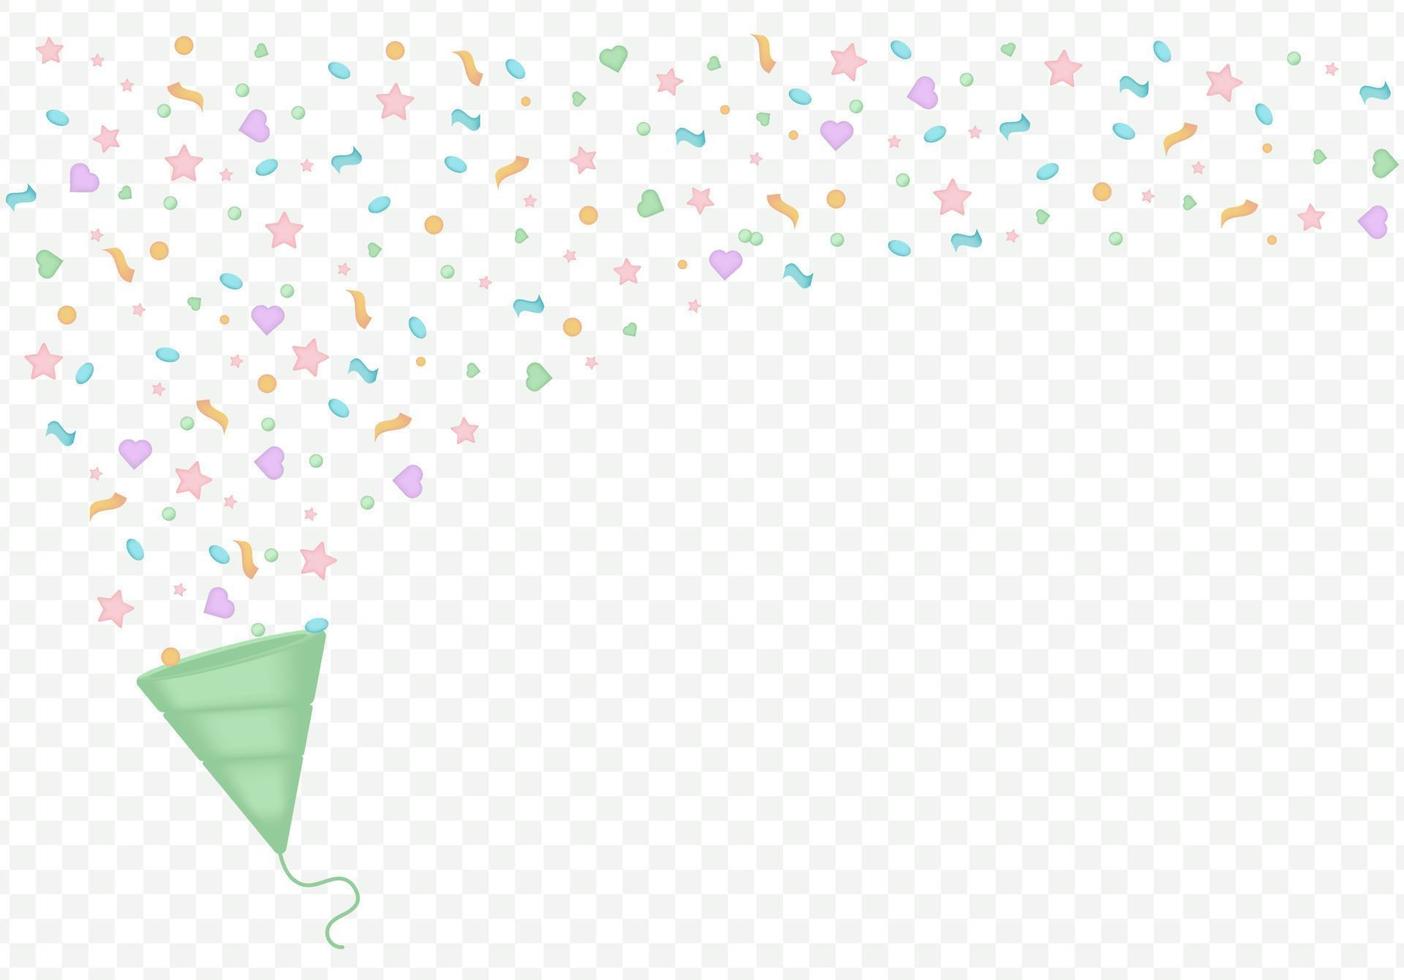 3d fiesta popper con confeti plastilina estilo de dibujos animados símbolo de sorpresa. ilustración vectorial de galleta de vacaciones vector